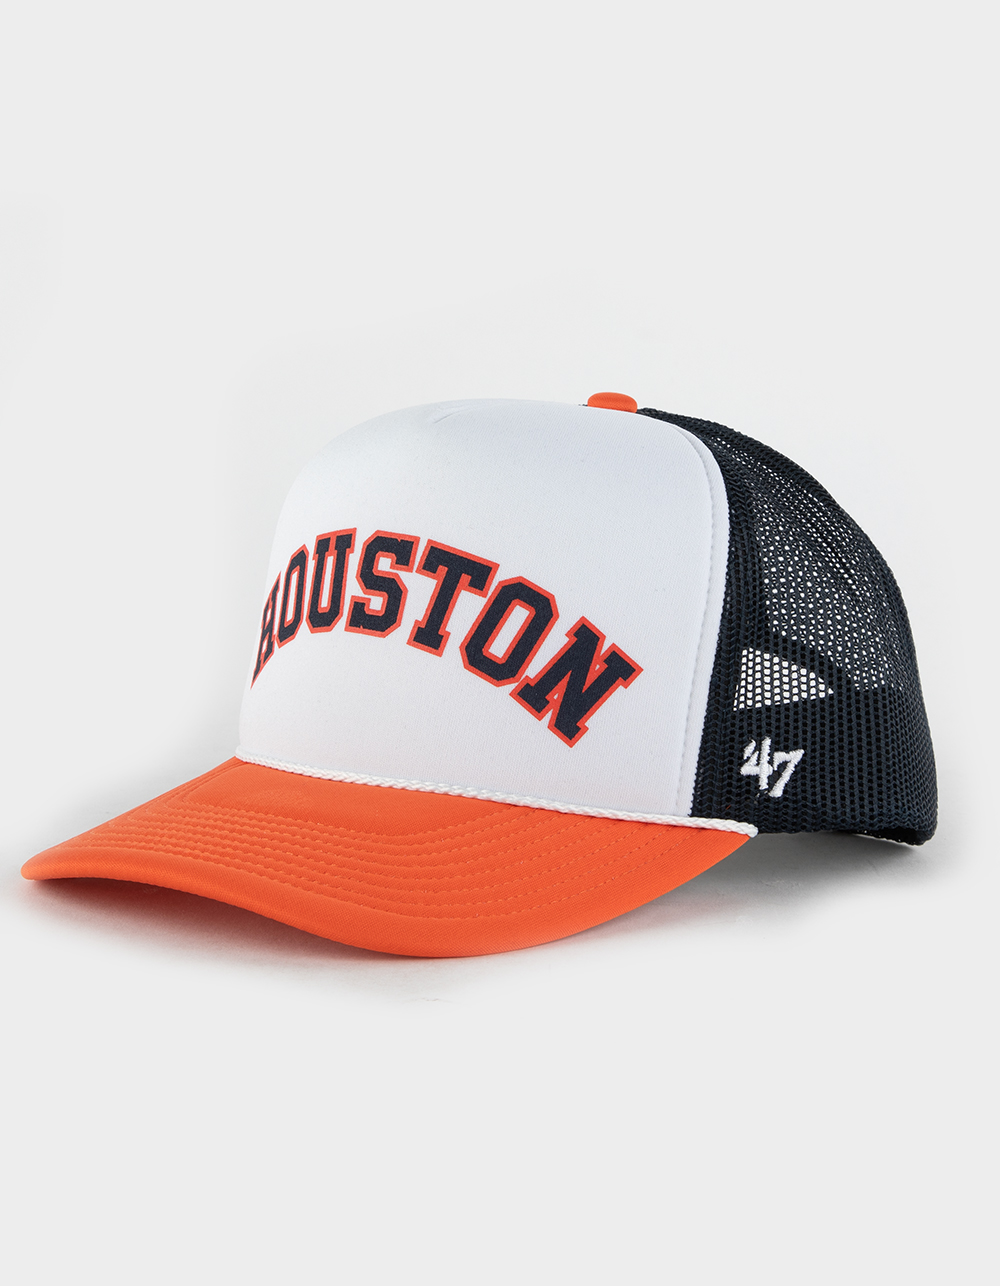 47 Brand Houston Astros Cooperstown Rewind Script '47 Trucker Hat - White - One Size